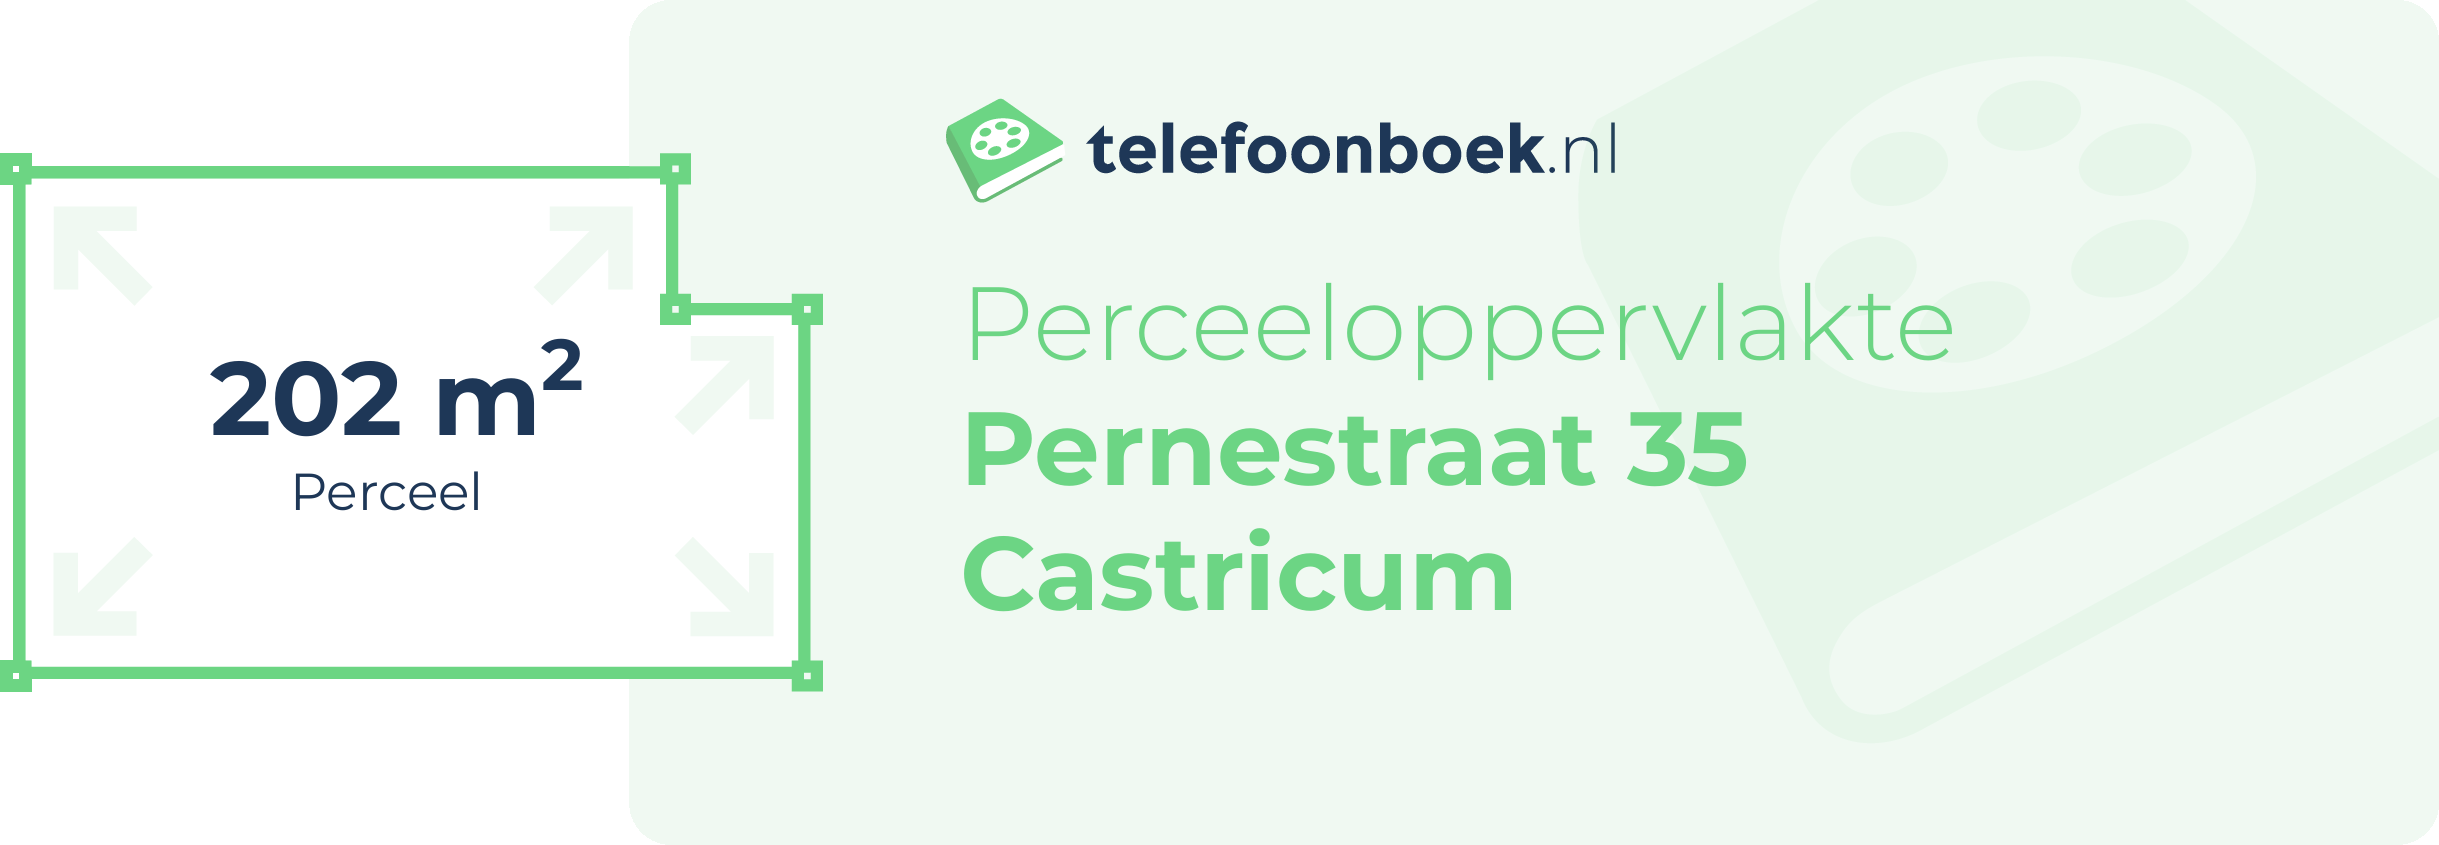 Perceeloppervlakte Pernestraat 35 Castricum